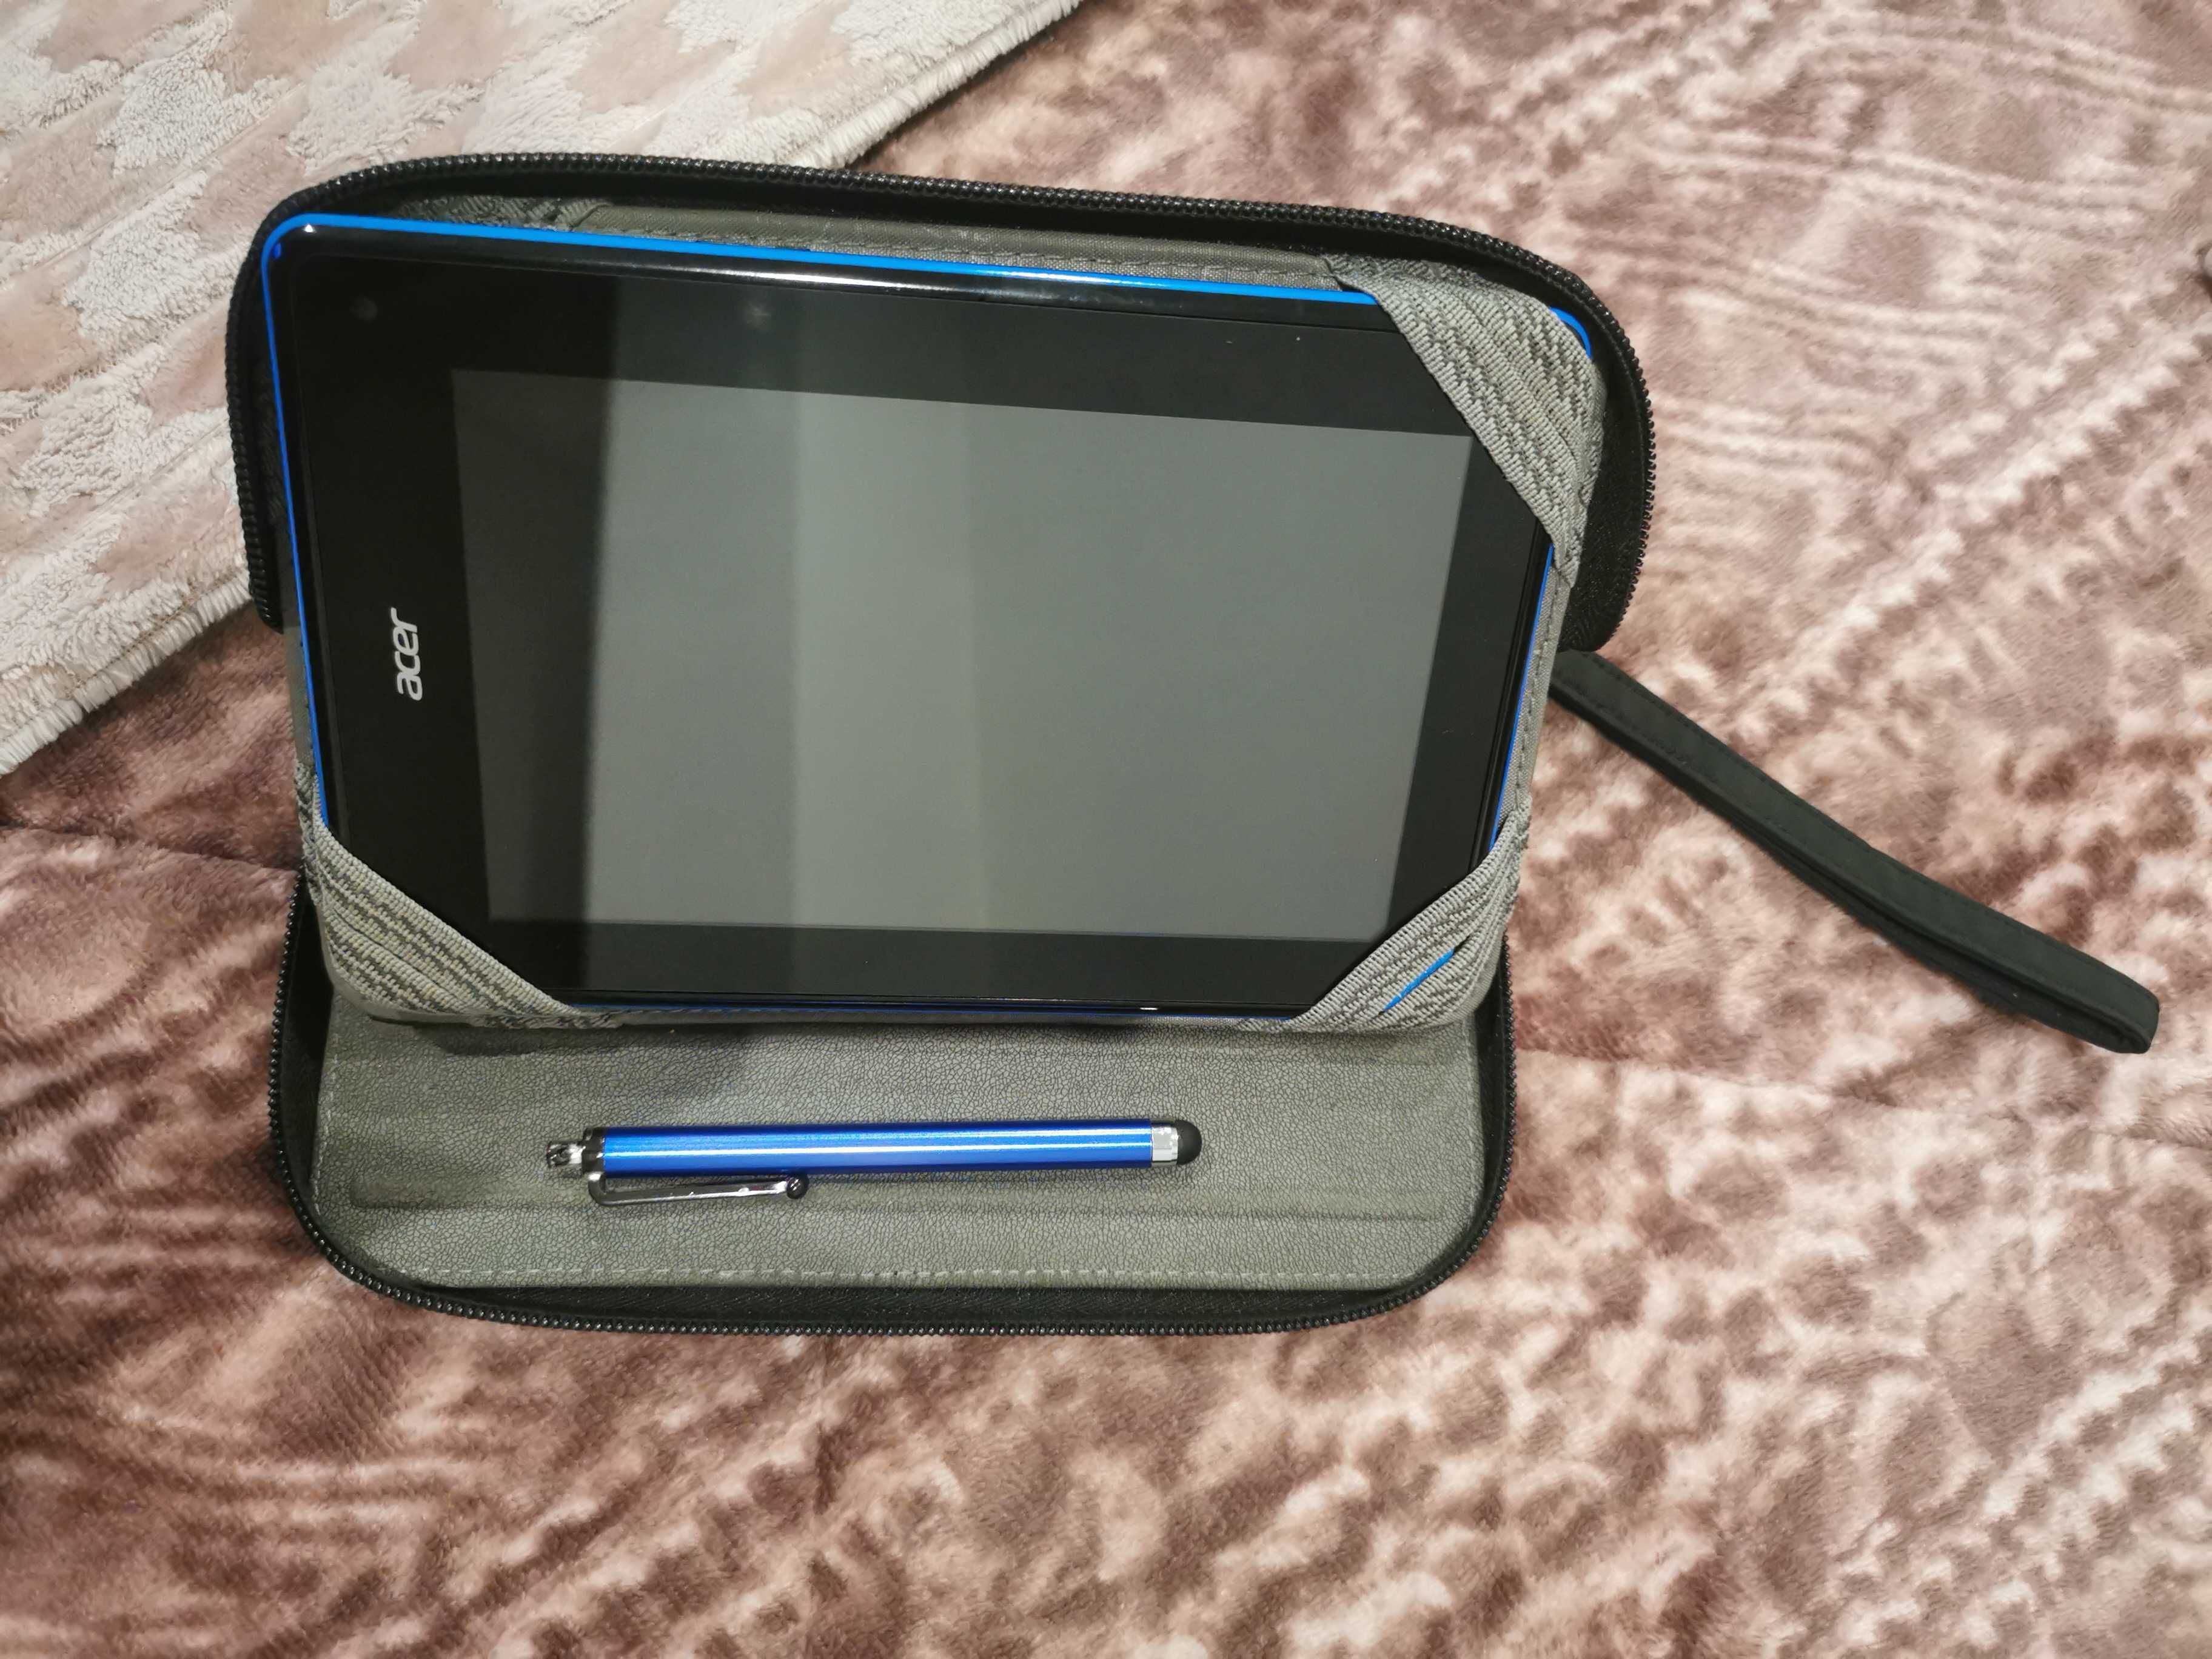 Tablet Acer Iconia B1-810- como novo